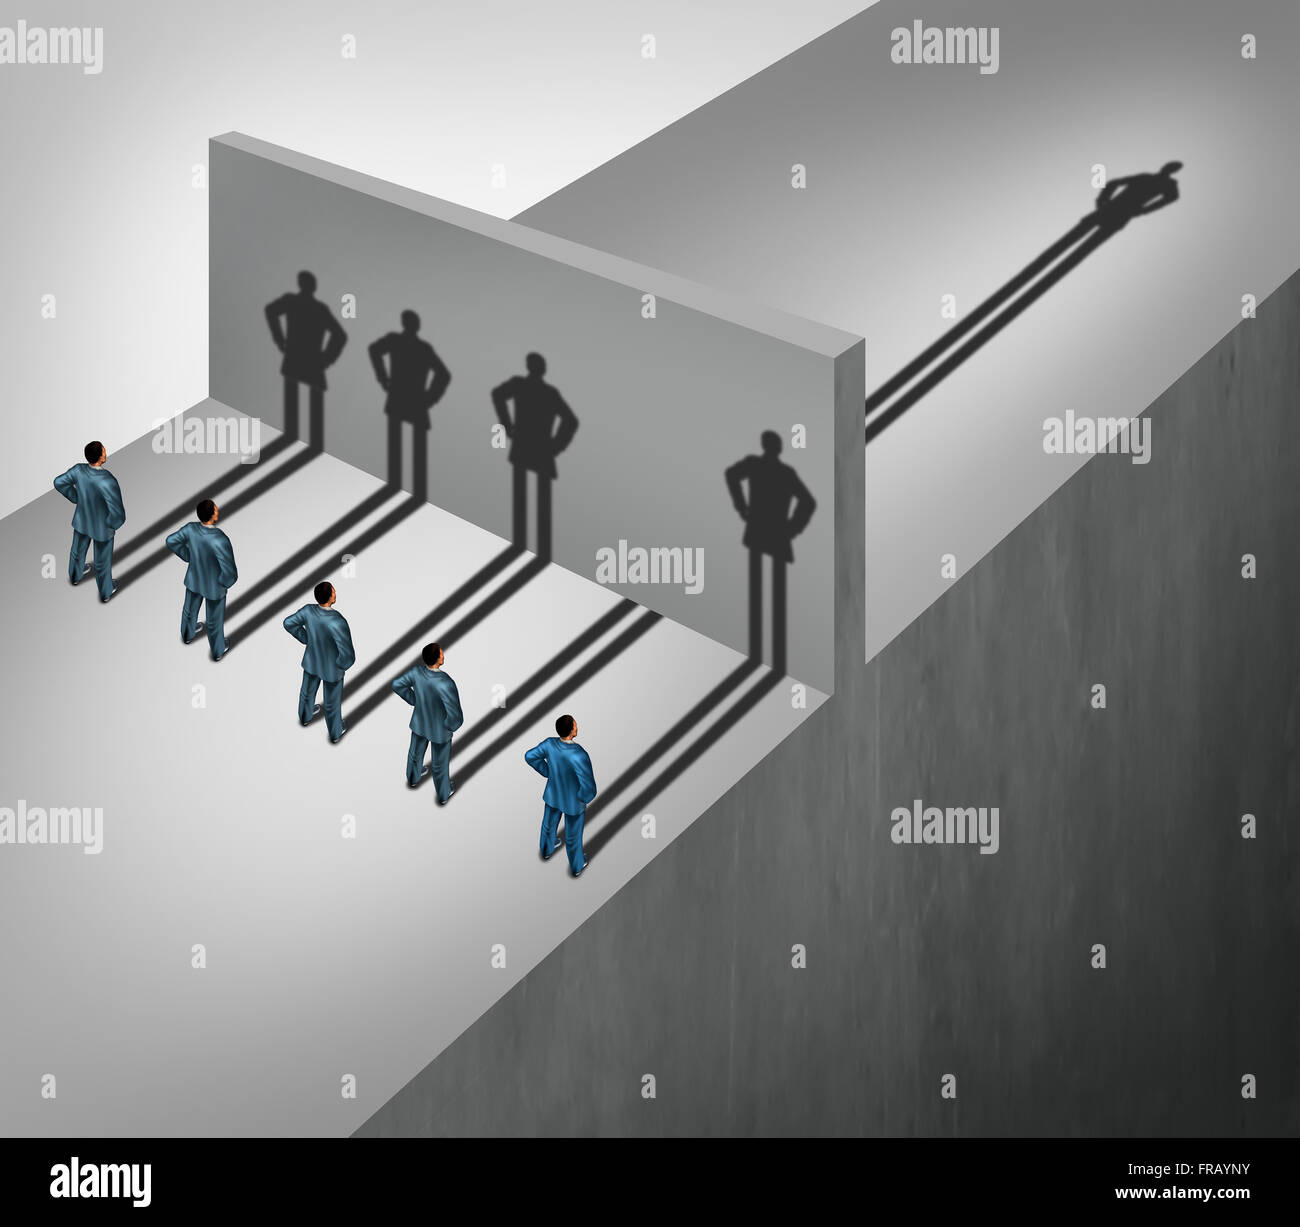 Führung-Fähigkeiten-Business-Konzept als eine Gruppe von Menschen Schattenwurf Halt an einer Mauer, sondern ein individueller Unternehmer hat einen Schatten Sprung über das Hindernis als eine Fähigkeit, die Metapher erfolgreich zu sein. Stockfoto